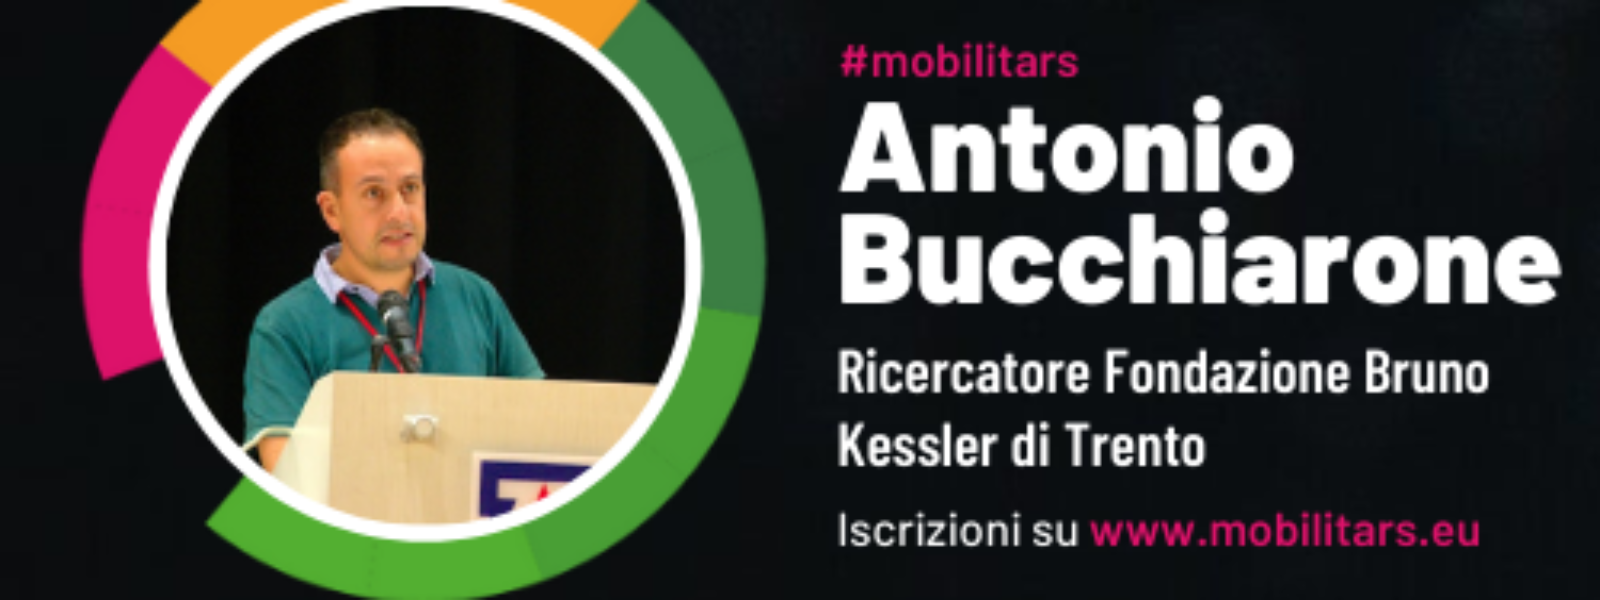 MobilitARS_Antonio Bucchiarone